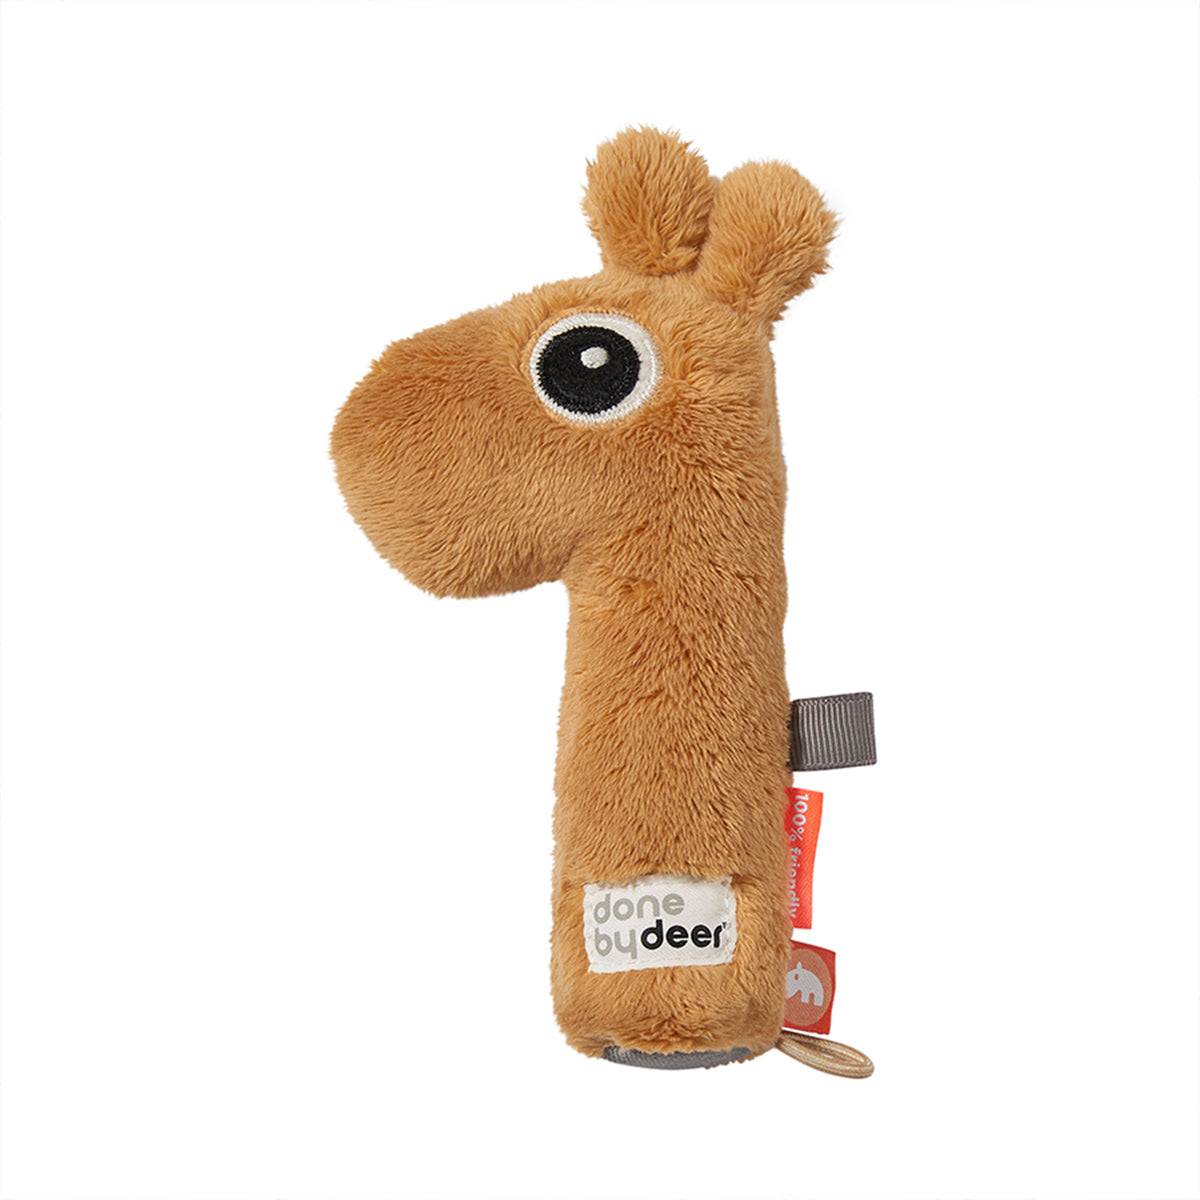 De Done by Deer rammelaar Raffi mustard is een leuke baby rammelaar om je baby urenlang te vermaken. De leuke okergele giraf maakt vrolijke rammel- en piepgeluiden. Leuk én educatief. VanZus